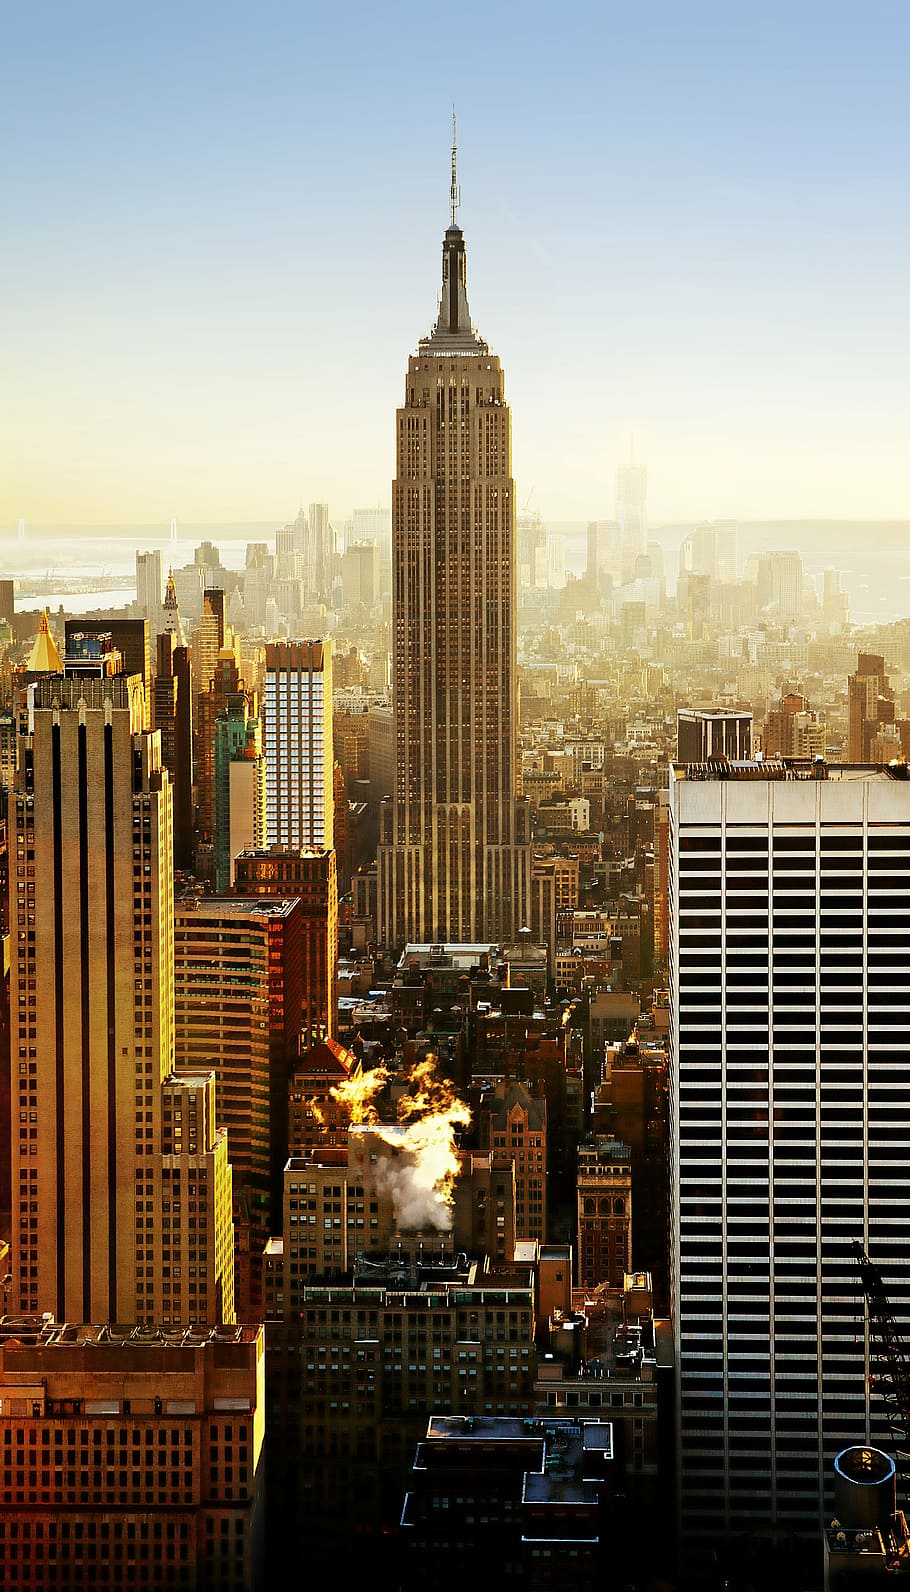 エンパイアステートビルディング, ニューヨーク, ニューヨーク市, 超高層ビル, 都市景観, 都市, 建築, ダウンタウン, 街のスカイライン, 建物の外観